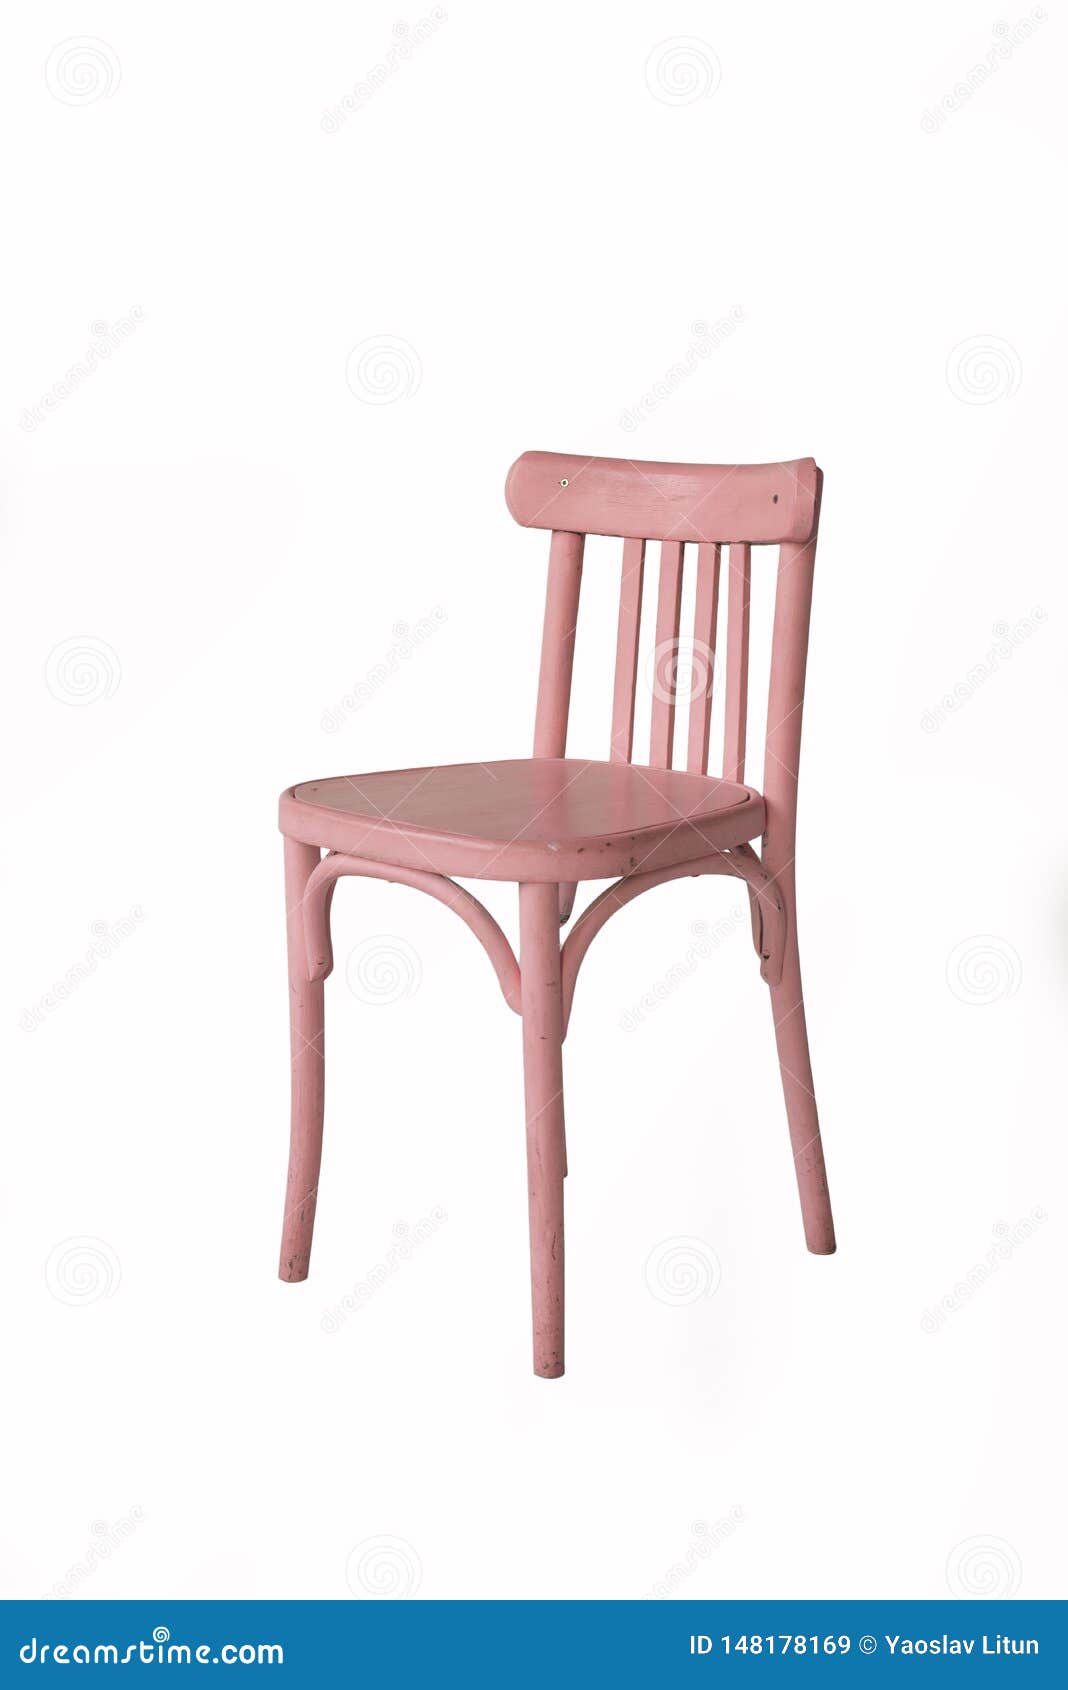 Roze Stoel Op Een Witte Achtergrond Stock Afbeelding - Image of roze, benen: 148178169